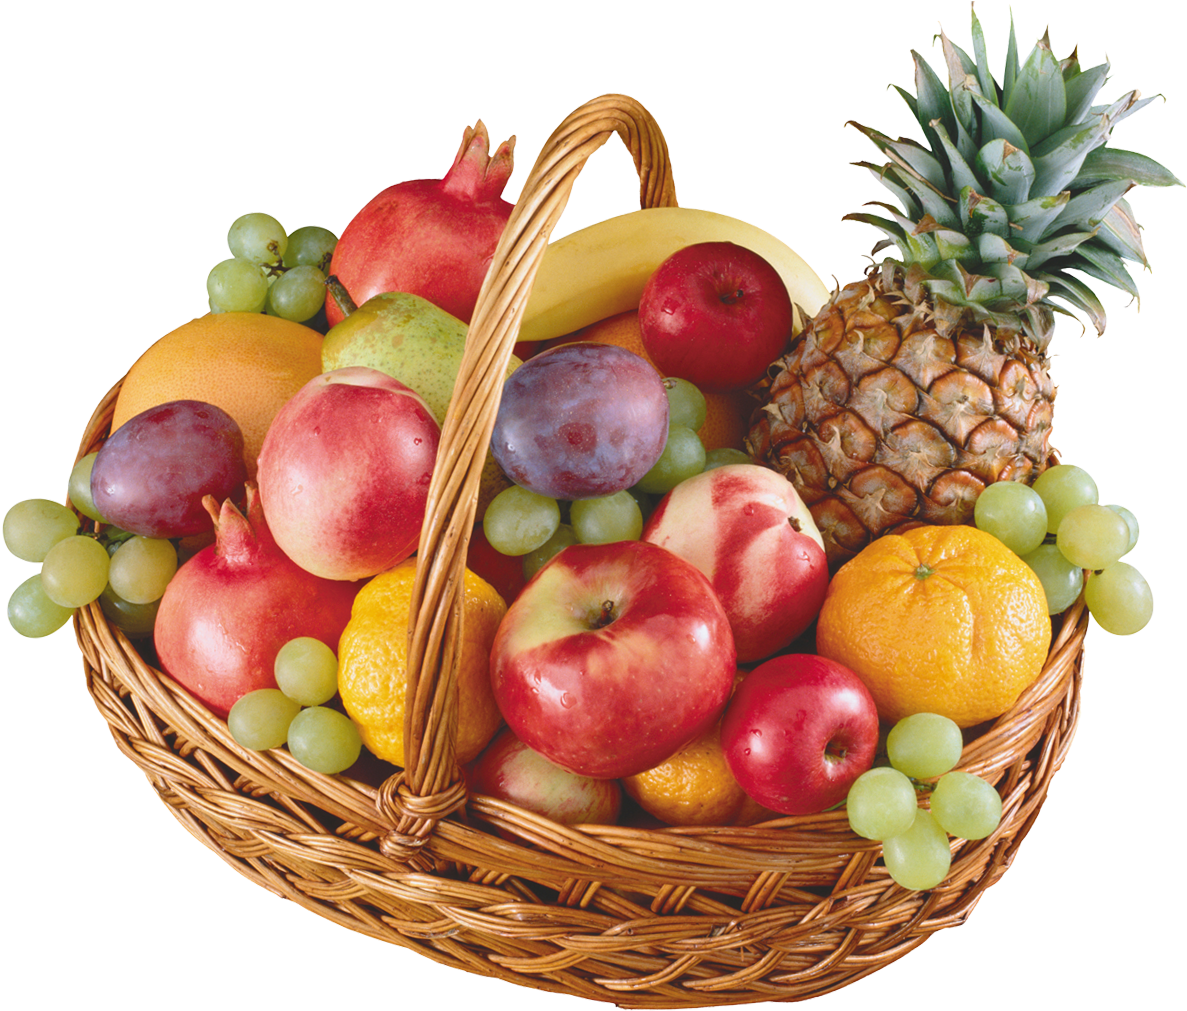 Fruit And Vegetables Basket Png - Stickalz Llc Full Color Fruit Basket Full Color Decal, (1226x1020)